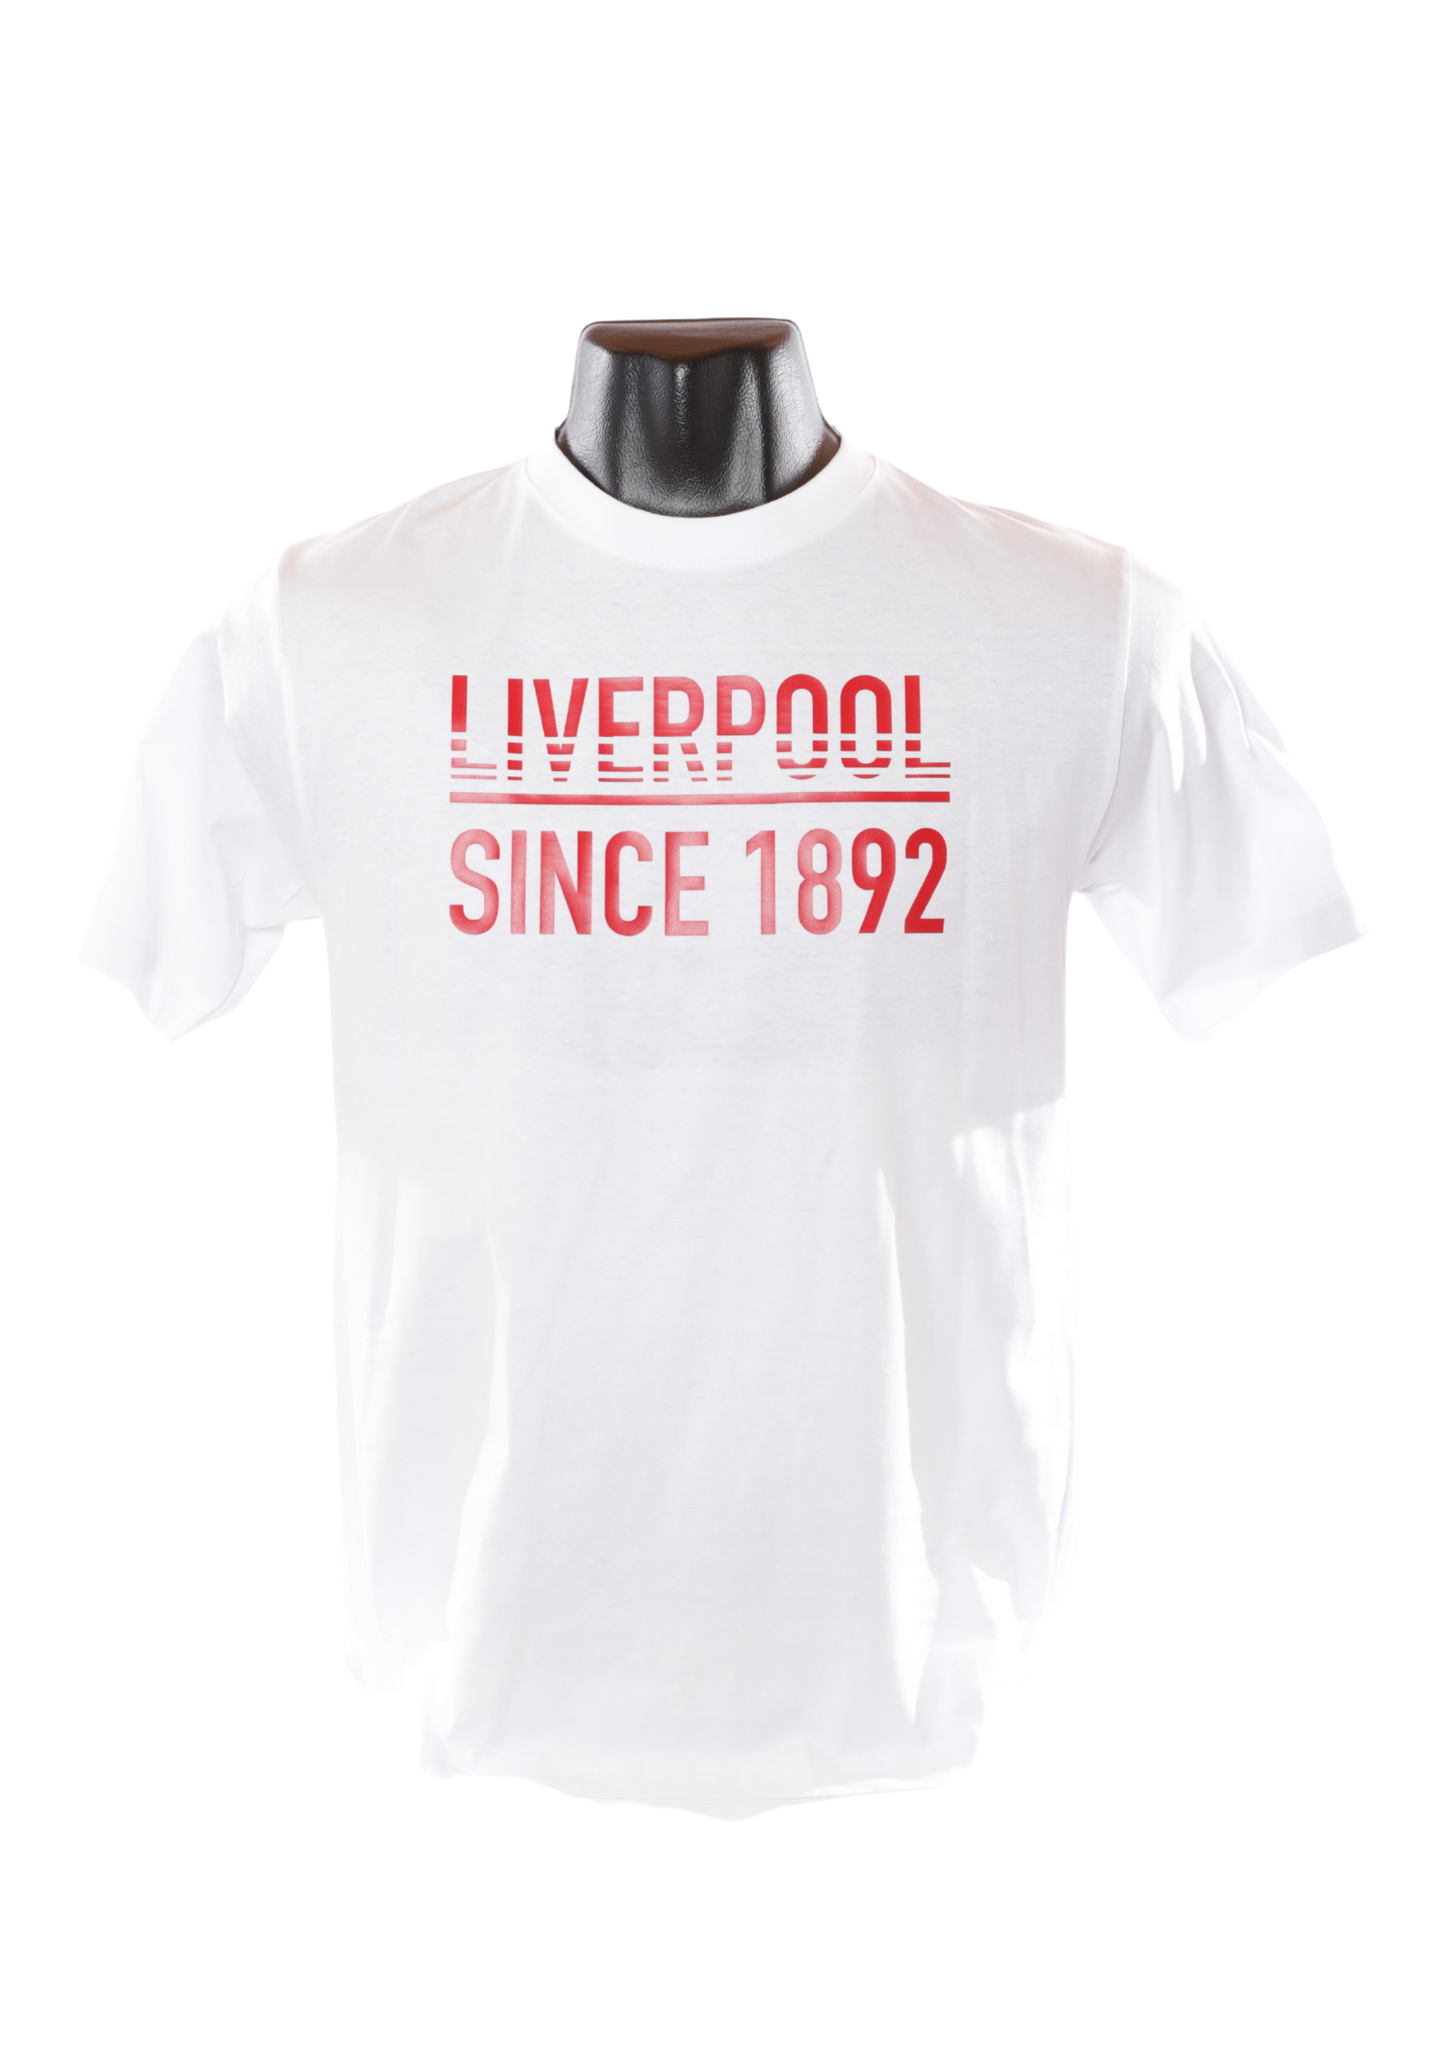 T-shirt - Since 1892